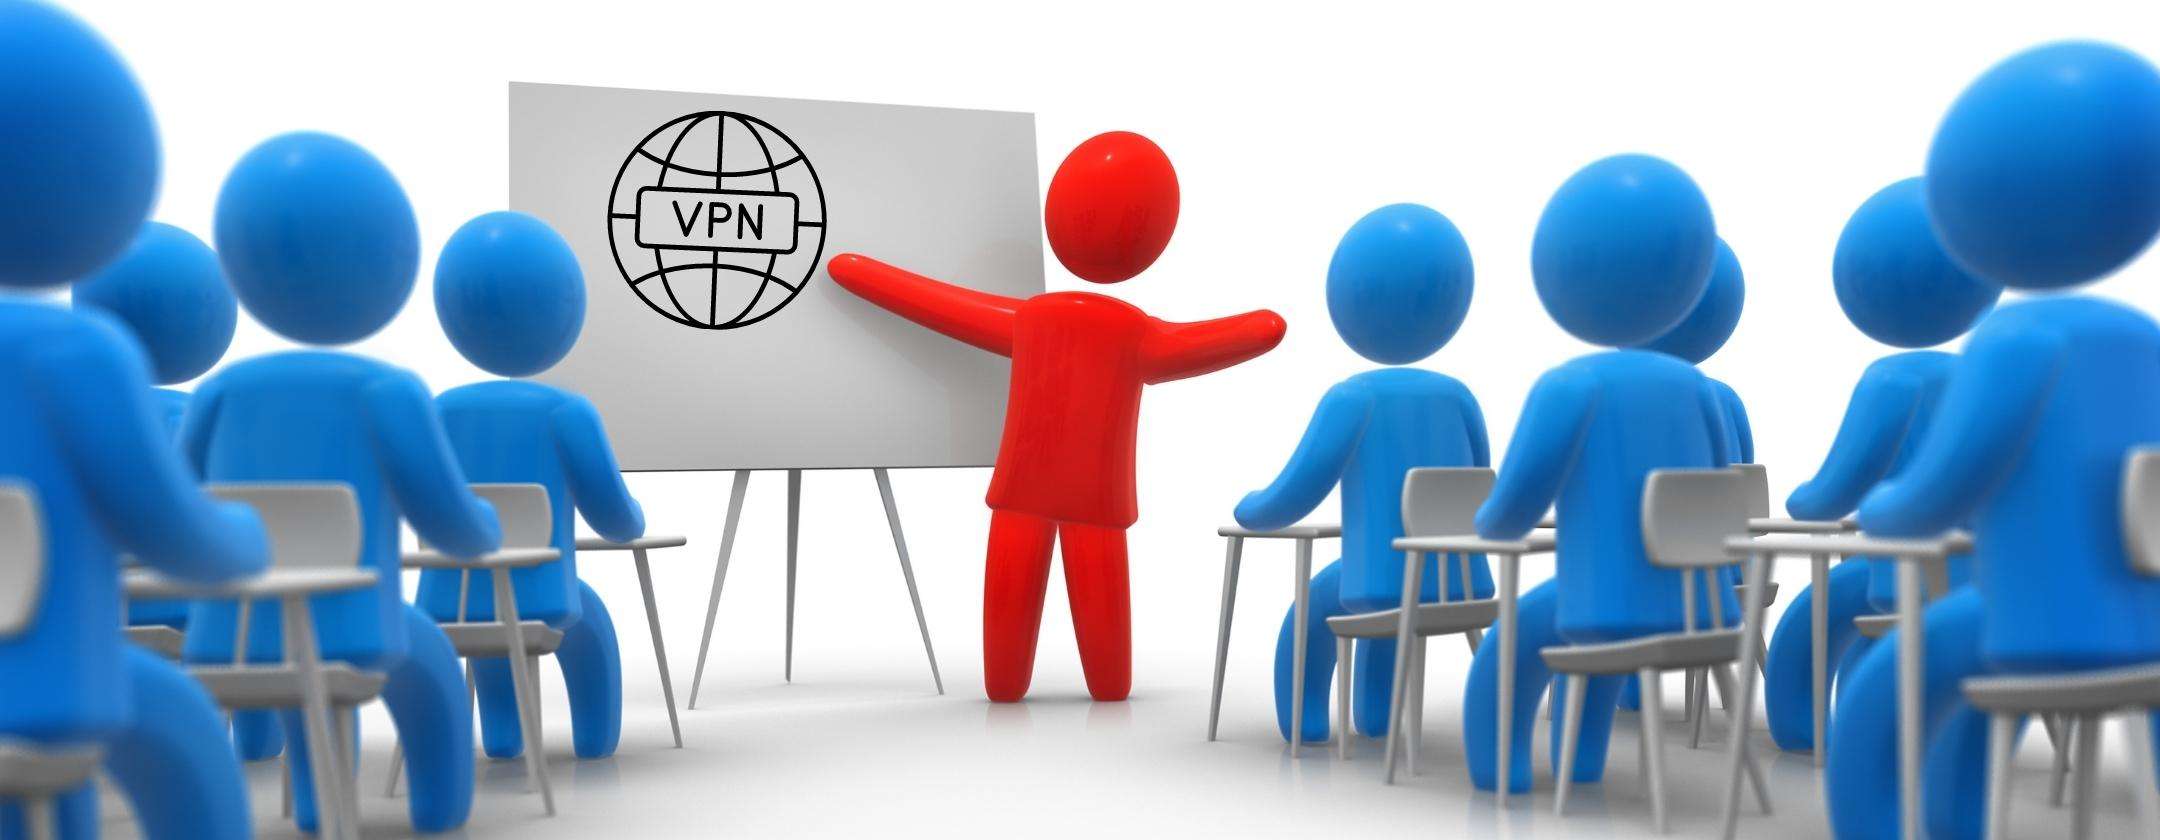 VPN spiegata in modo semplice per tutti